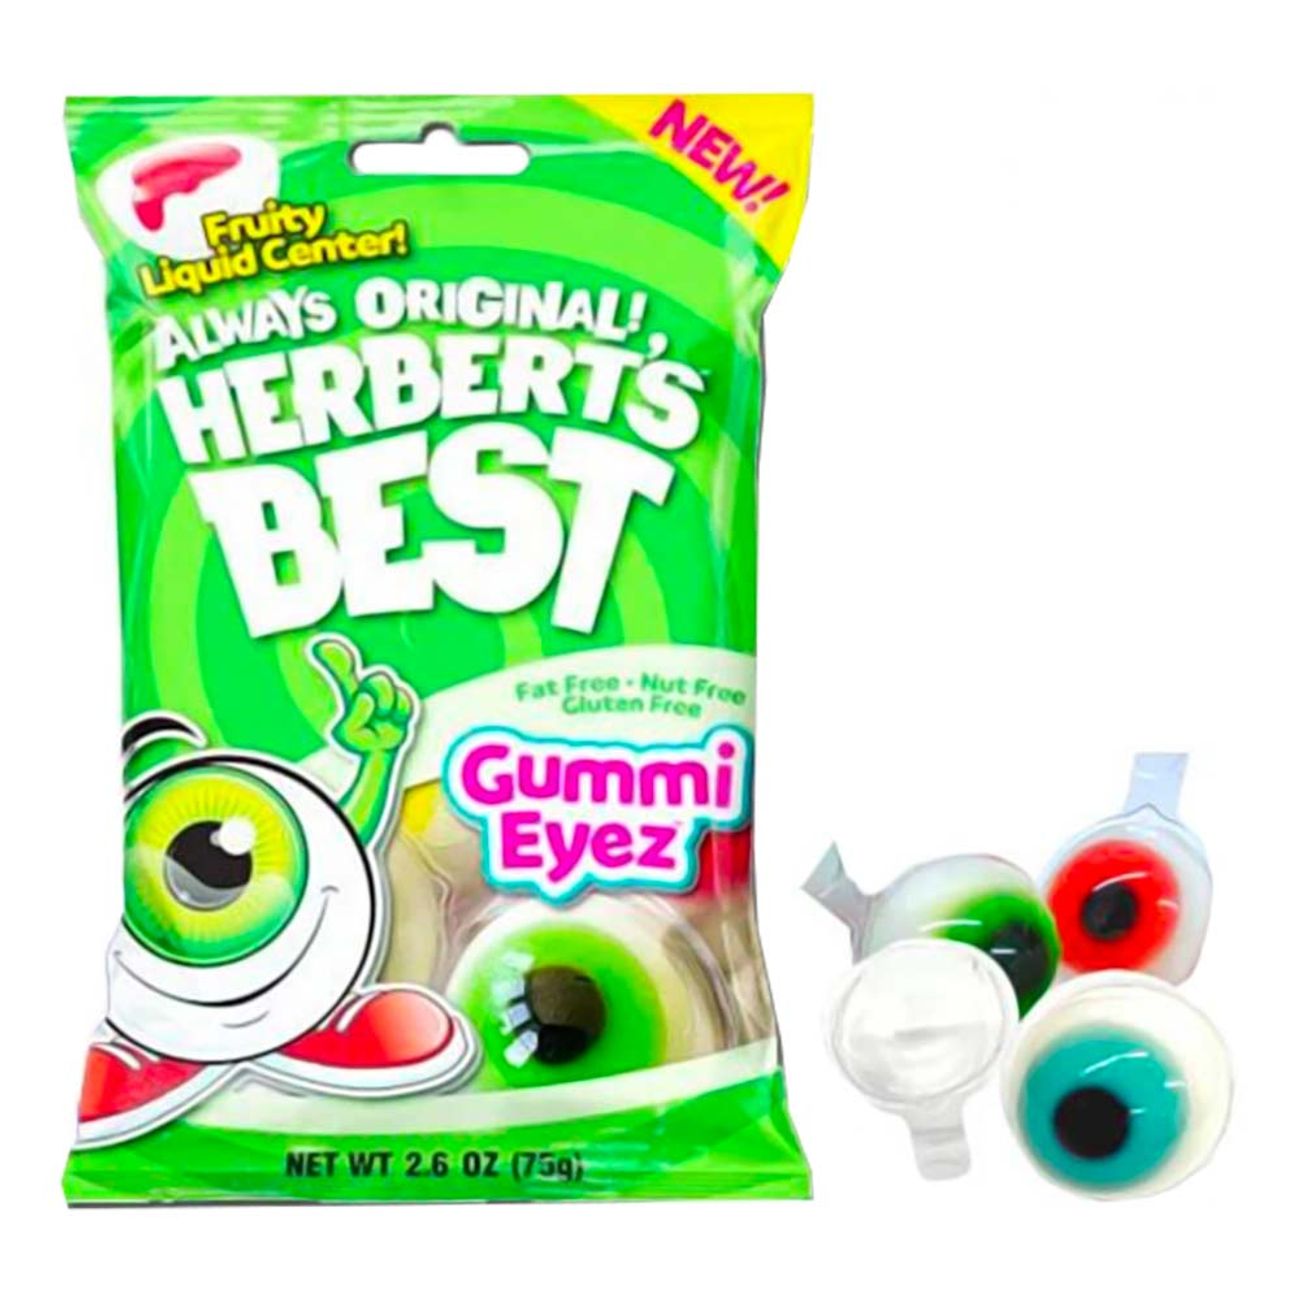 herberts-gummy-eyez-93166-1